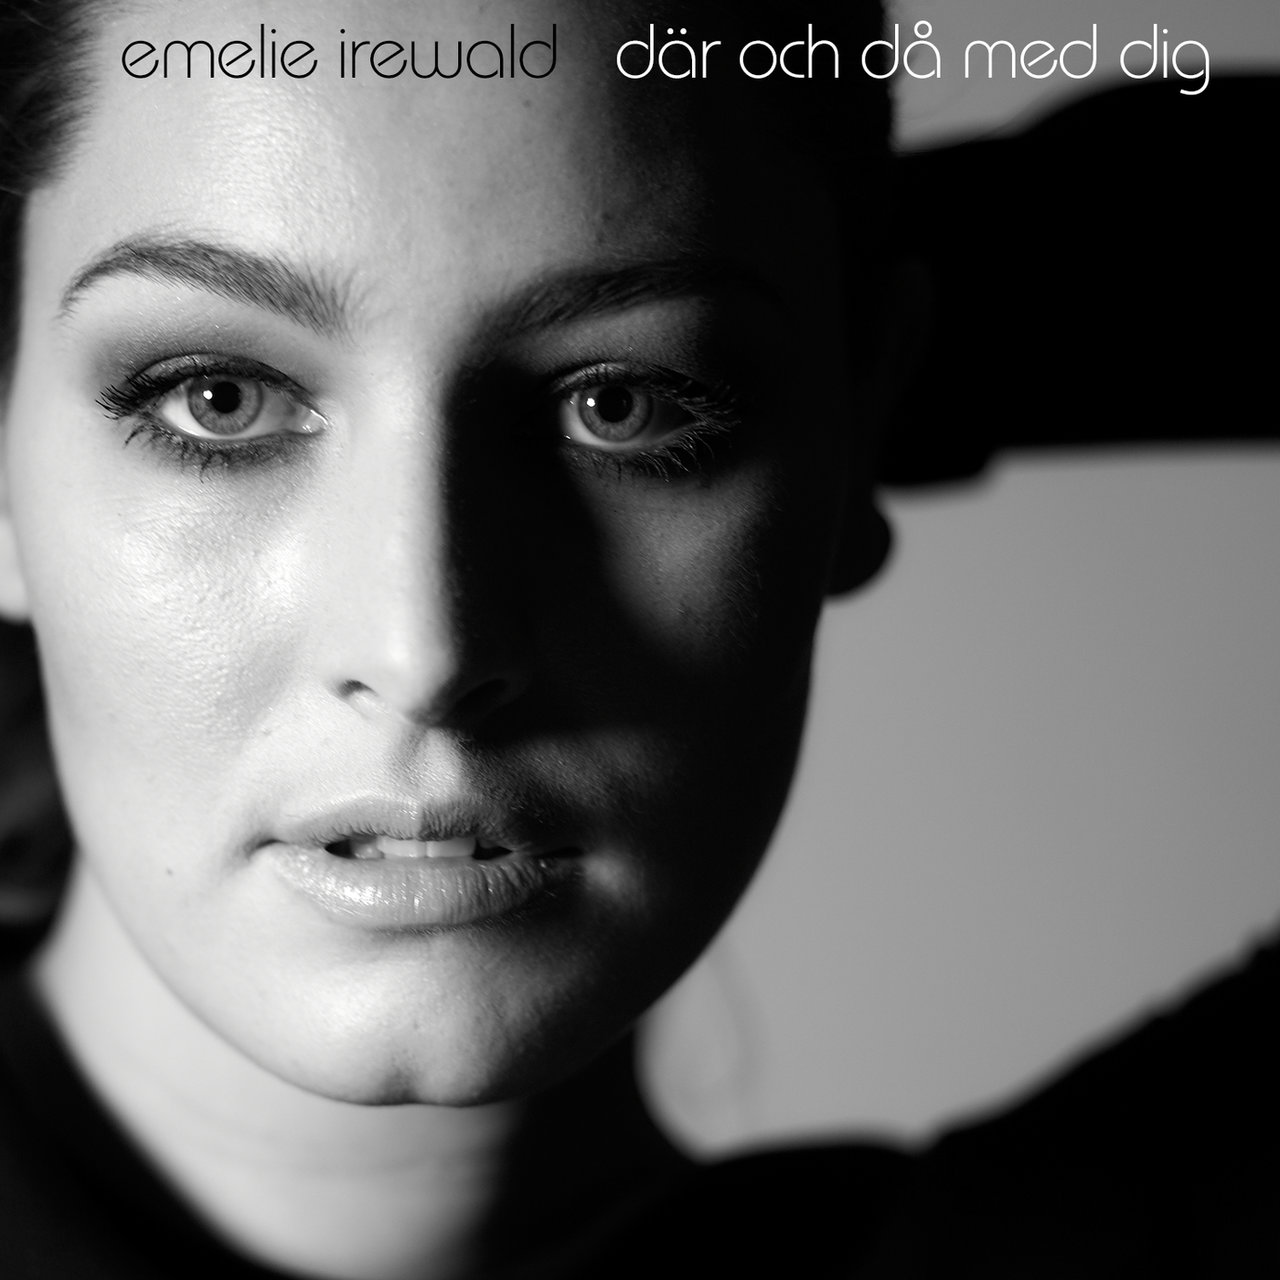 Emelie Irewald Där och då med dig - EP cover artwork